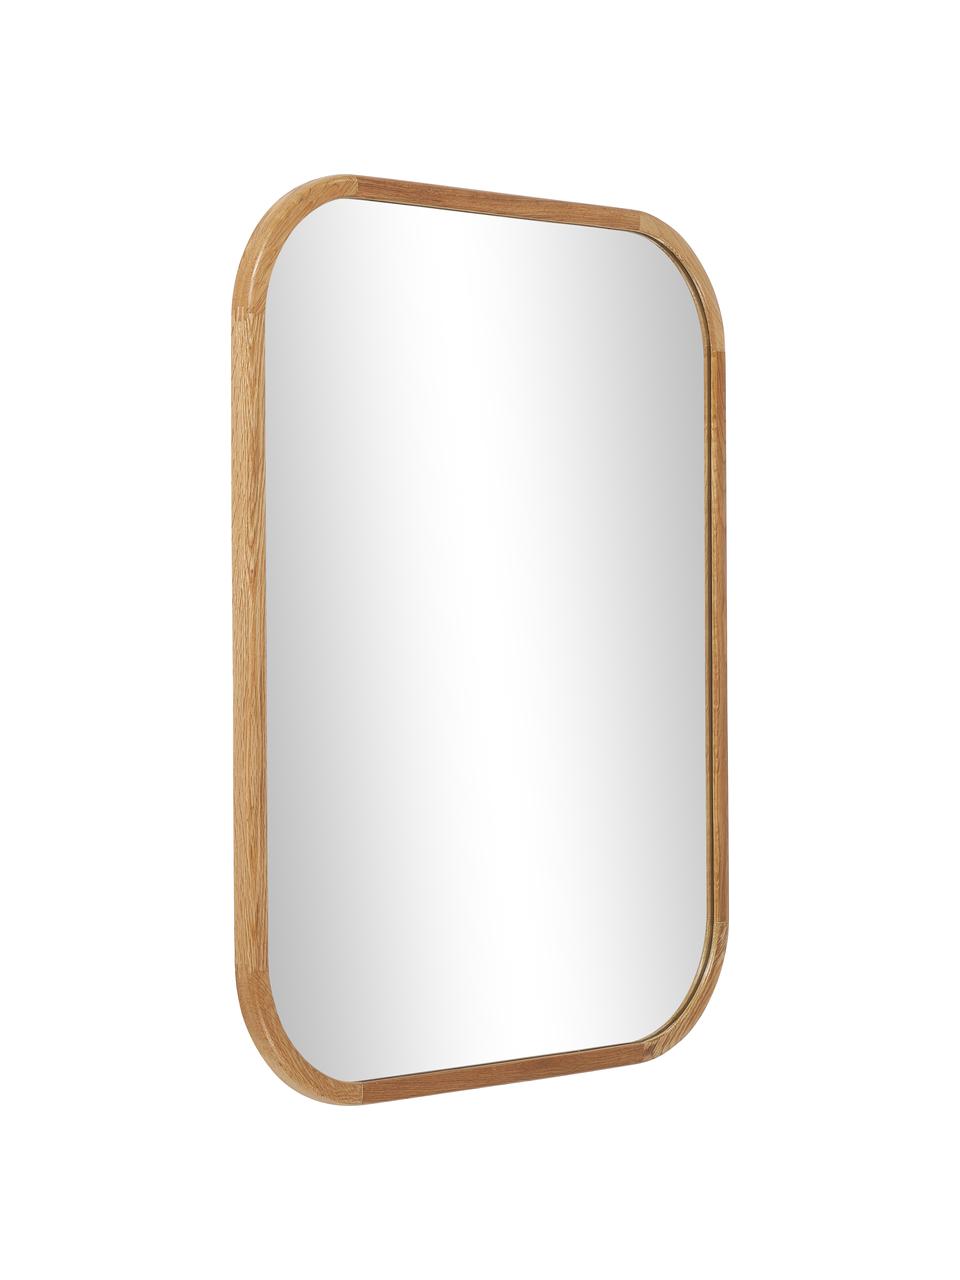 Obdélníkové nástěnné zrcadlo s rámem z dubového dřeva Levan, Dubové dřevo, Š 55 cm, V 72 cm